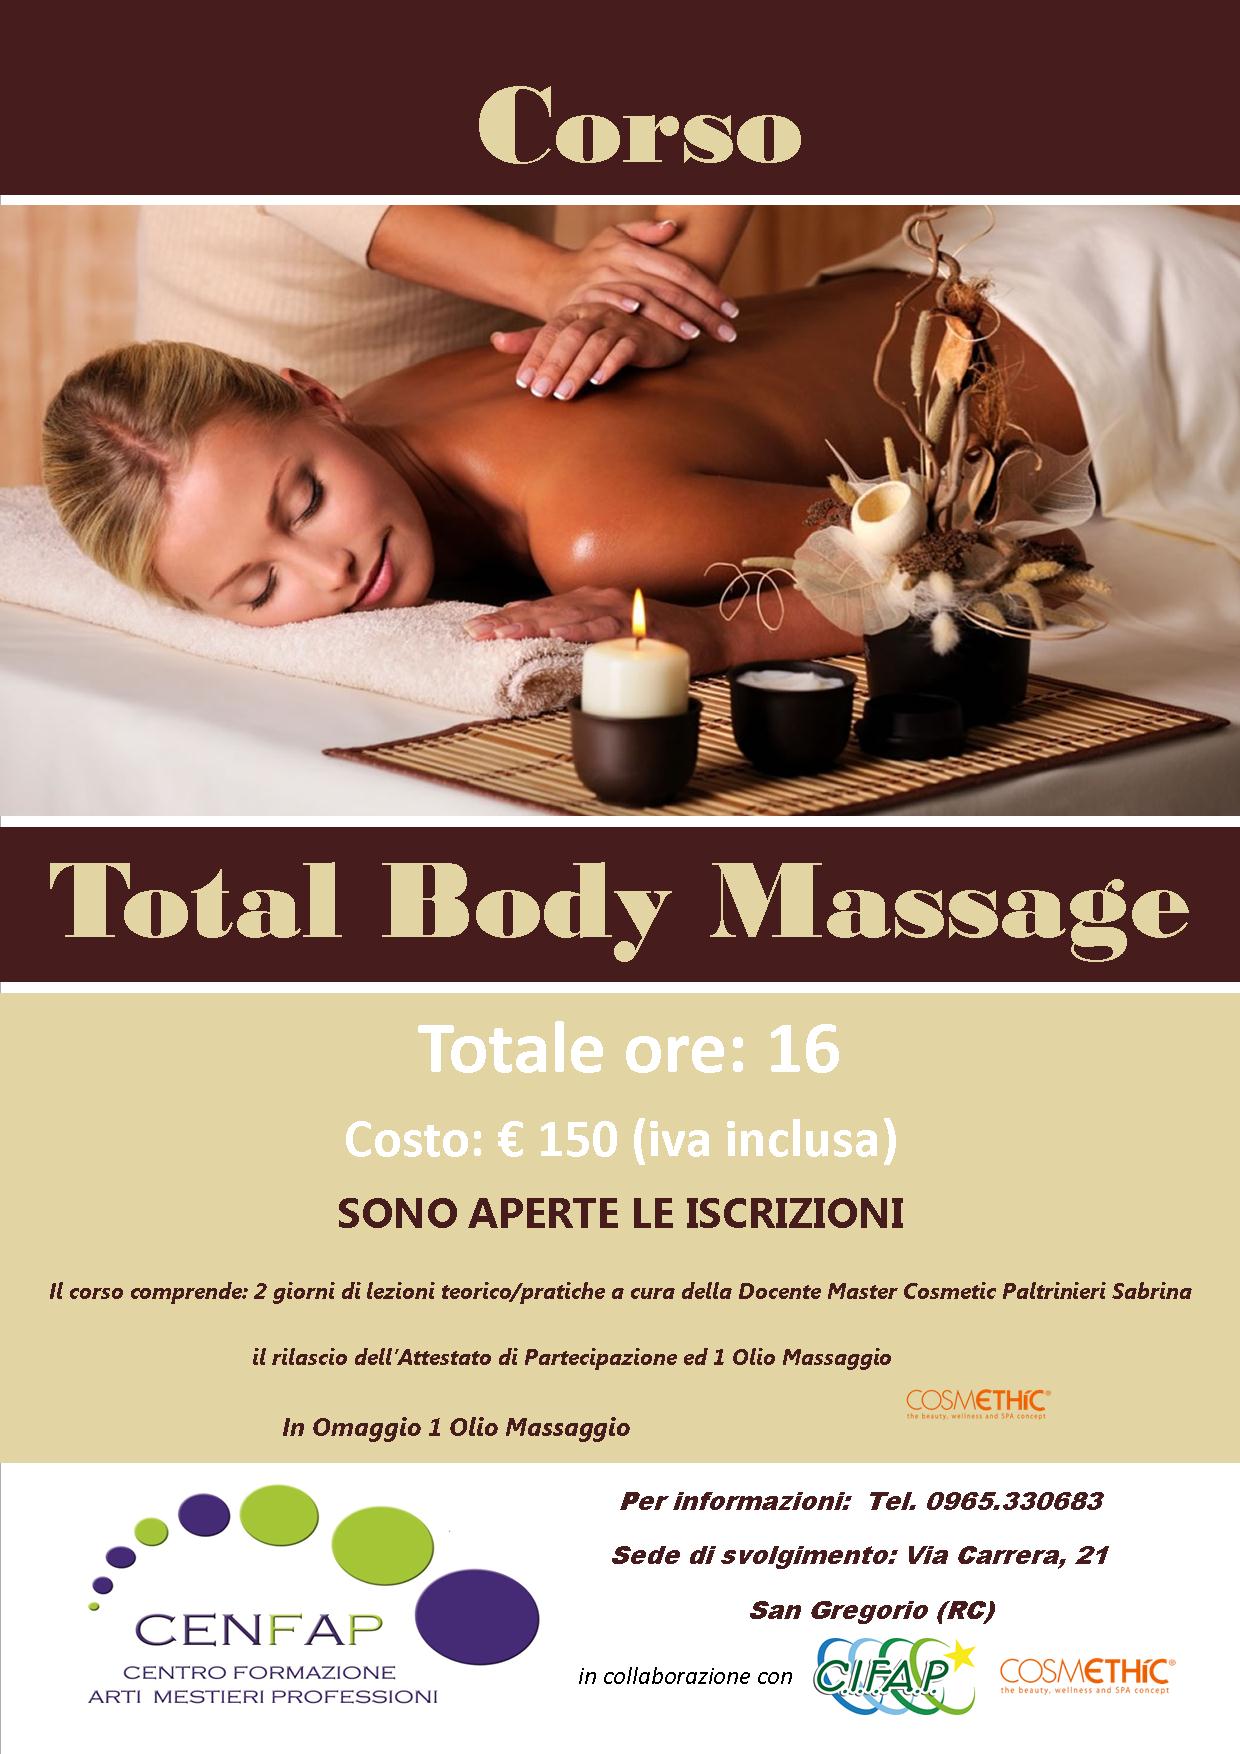 Corso Total Body Massage